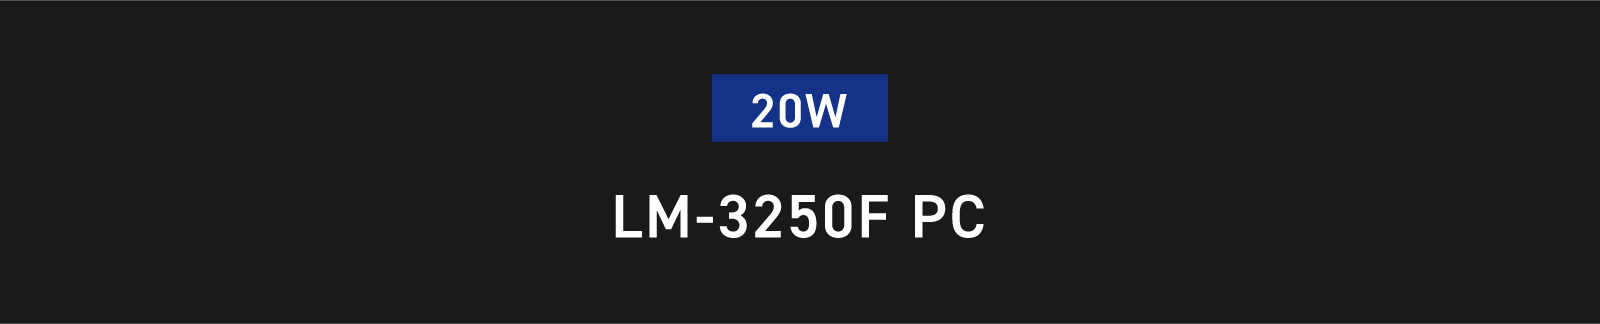 20W LM-3250F PC